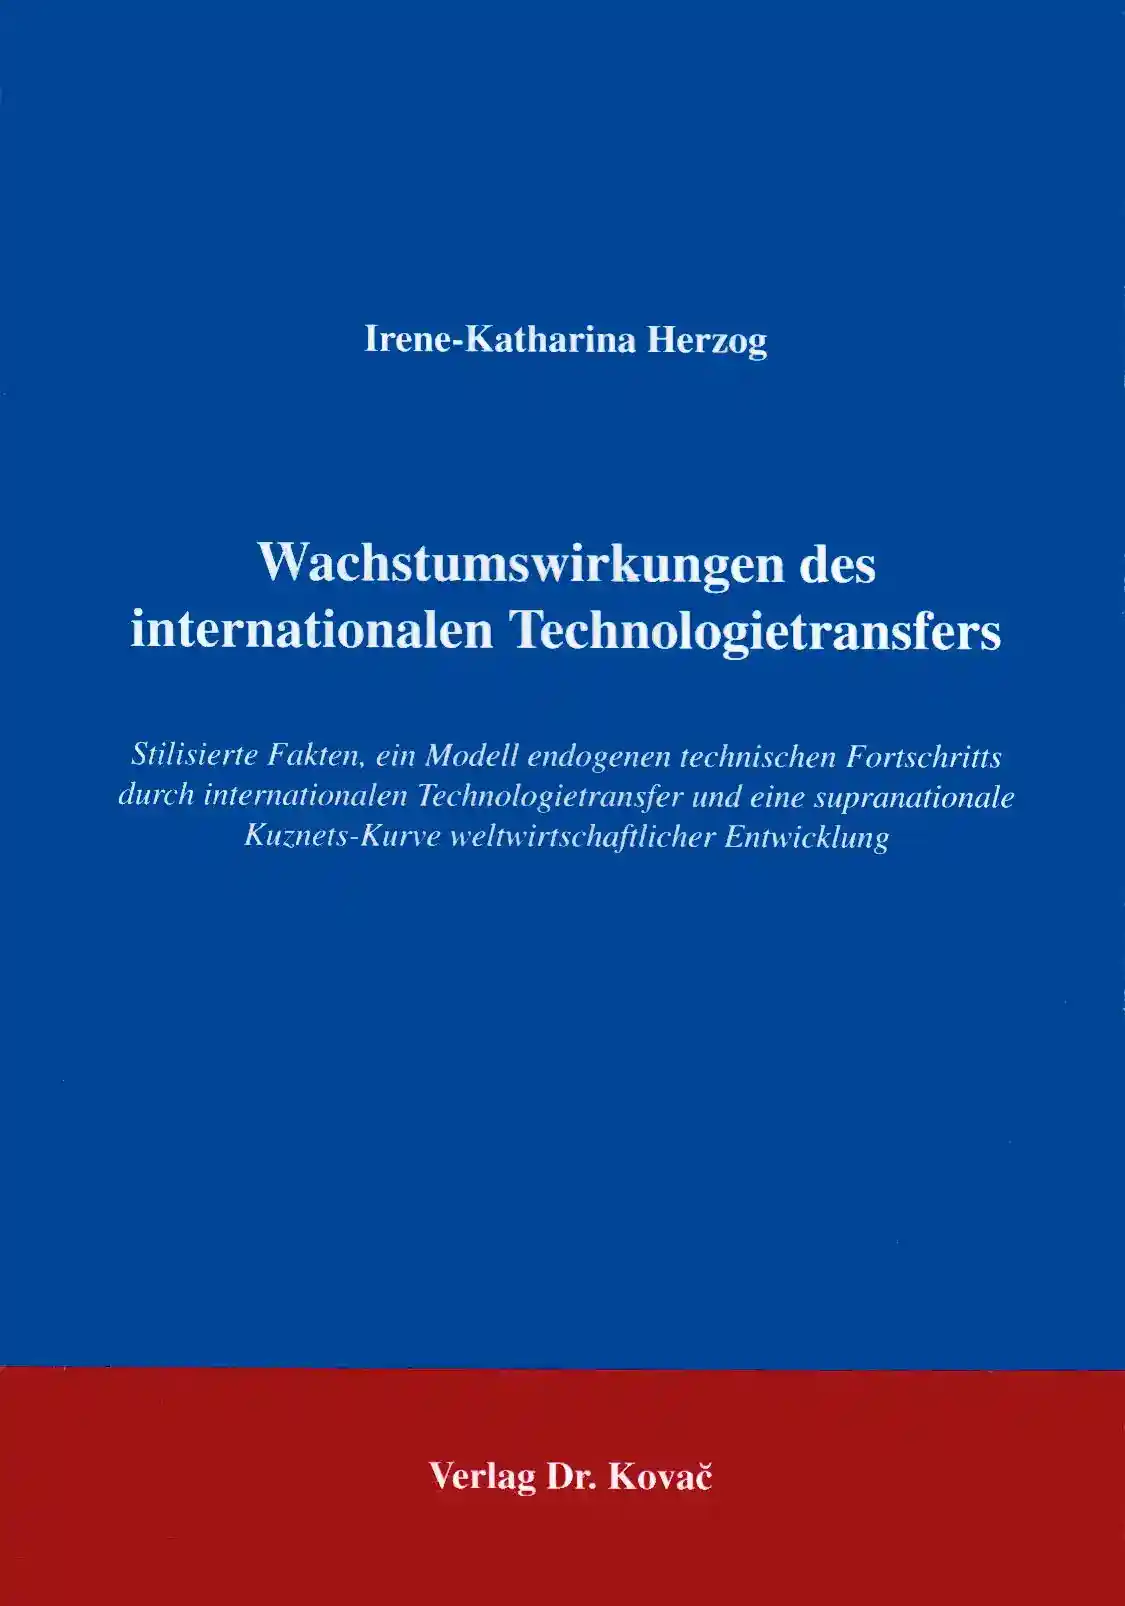 Zu den Wachstumswirkungen des internationalen Technologietransfers (Forschungsarbeit)